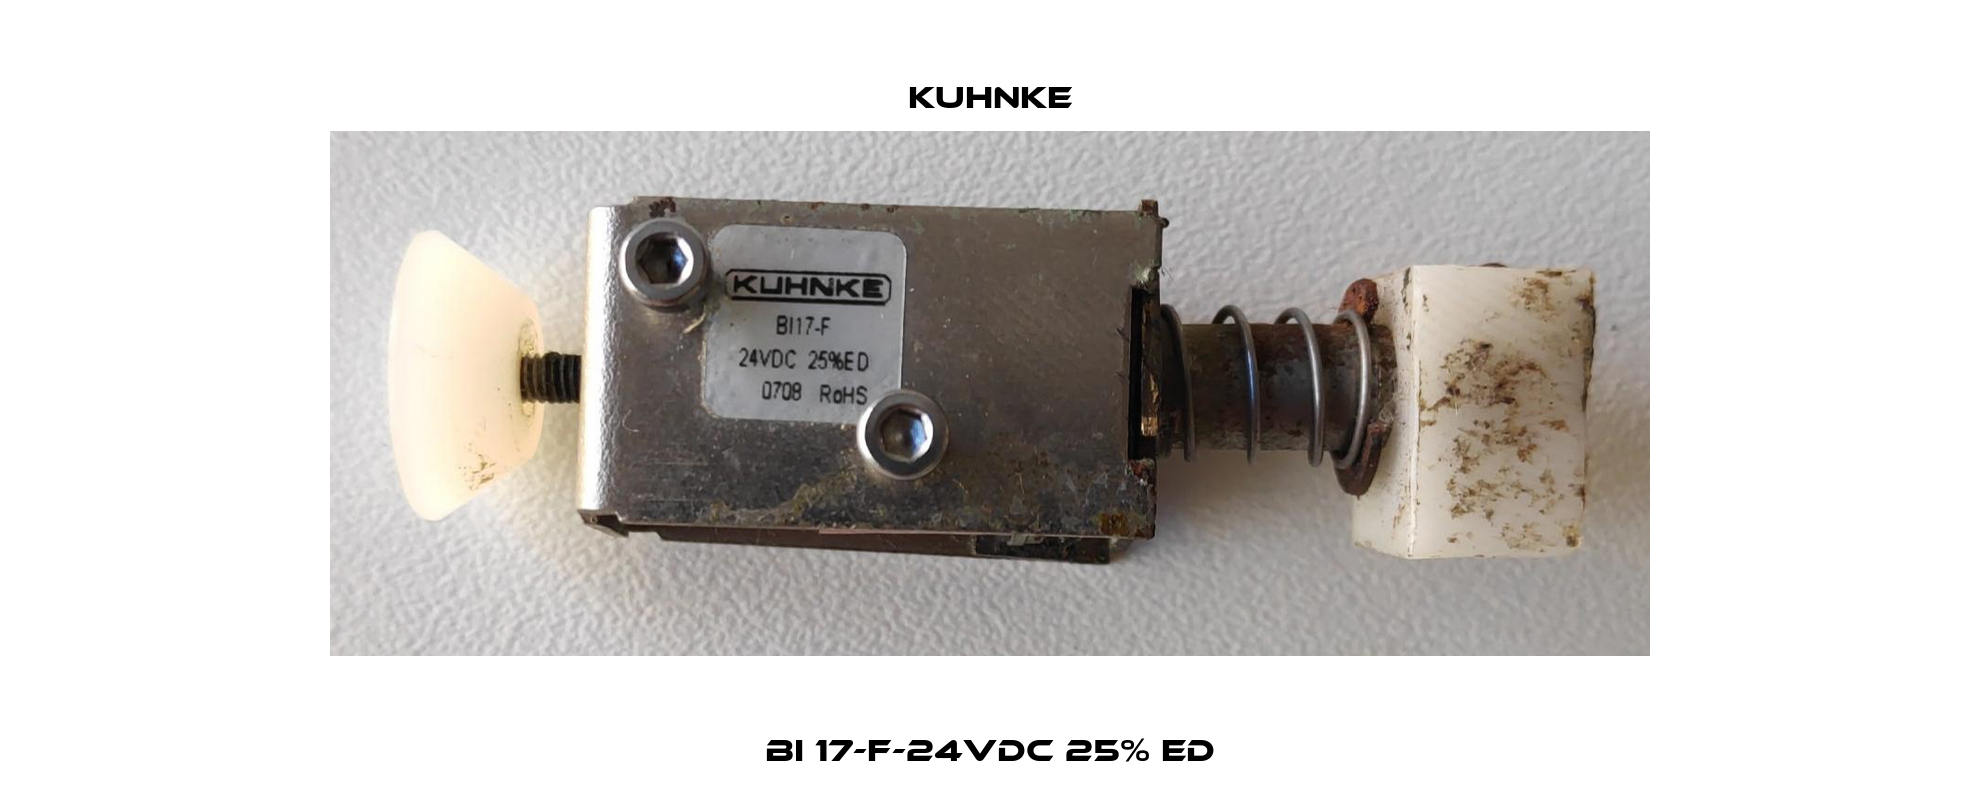 BI 17-F-24VDC 25% ED Kuhnke